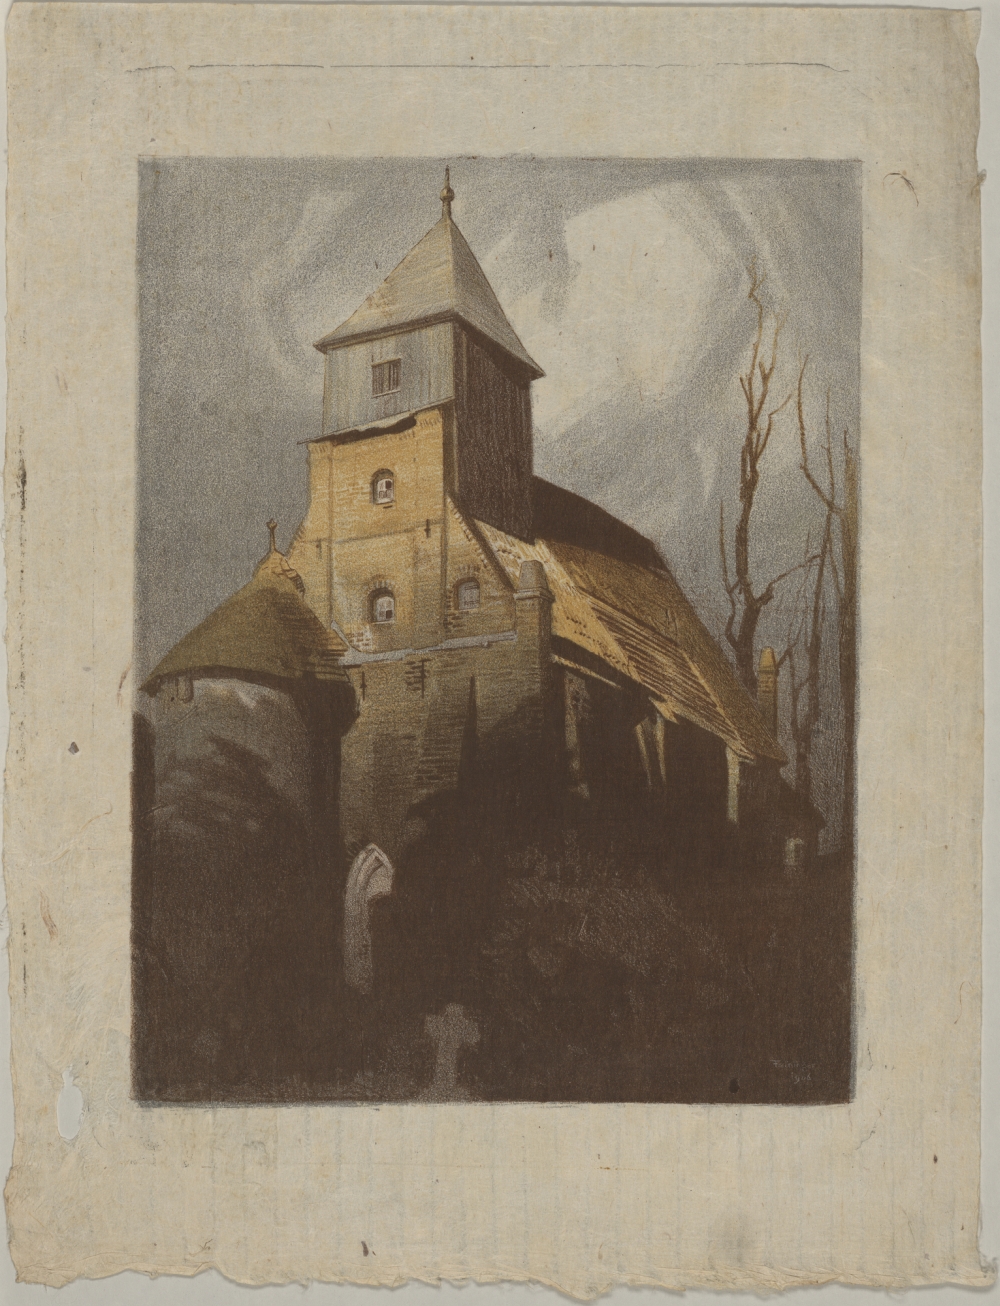 Lyonel Feininger: Alte Dorfkirche in Middelhagen, 1906